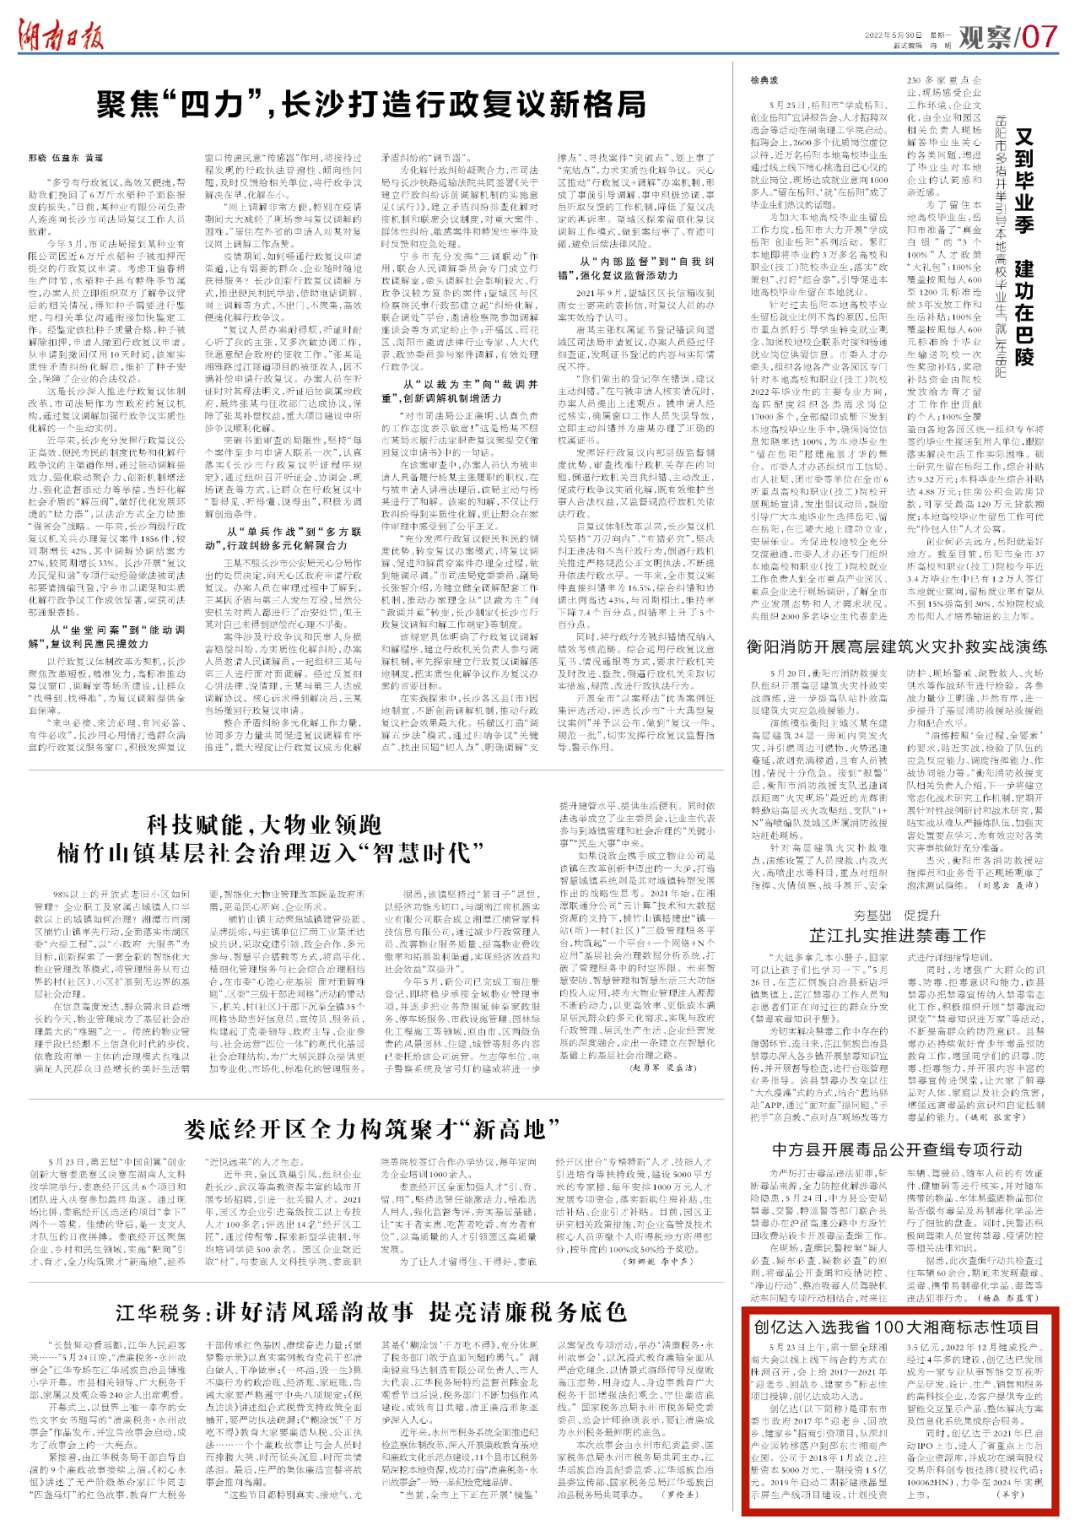 湖南日报丨创亿达入选我省100大湘商标志性项目